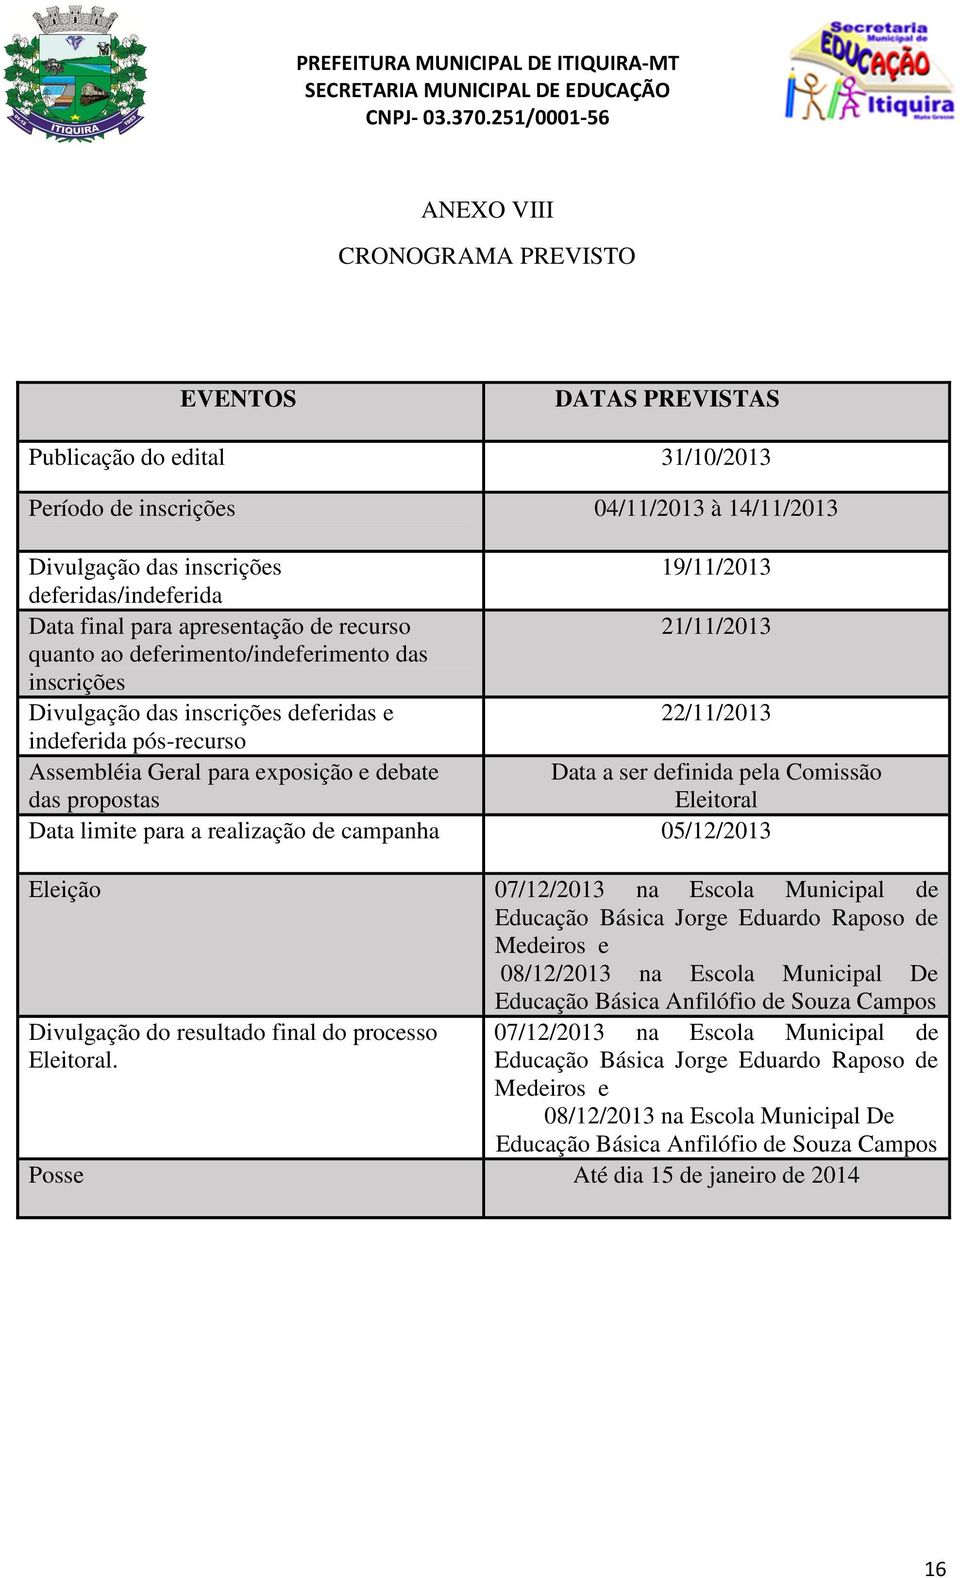 exposição e debate Data a ser definida pela Comissão das propostas Eleitoral Data limite para a realização de campanha 05/12/2013 Eleição 07/12/2013 na Escola Municipal de Educação Básica Jorge